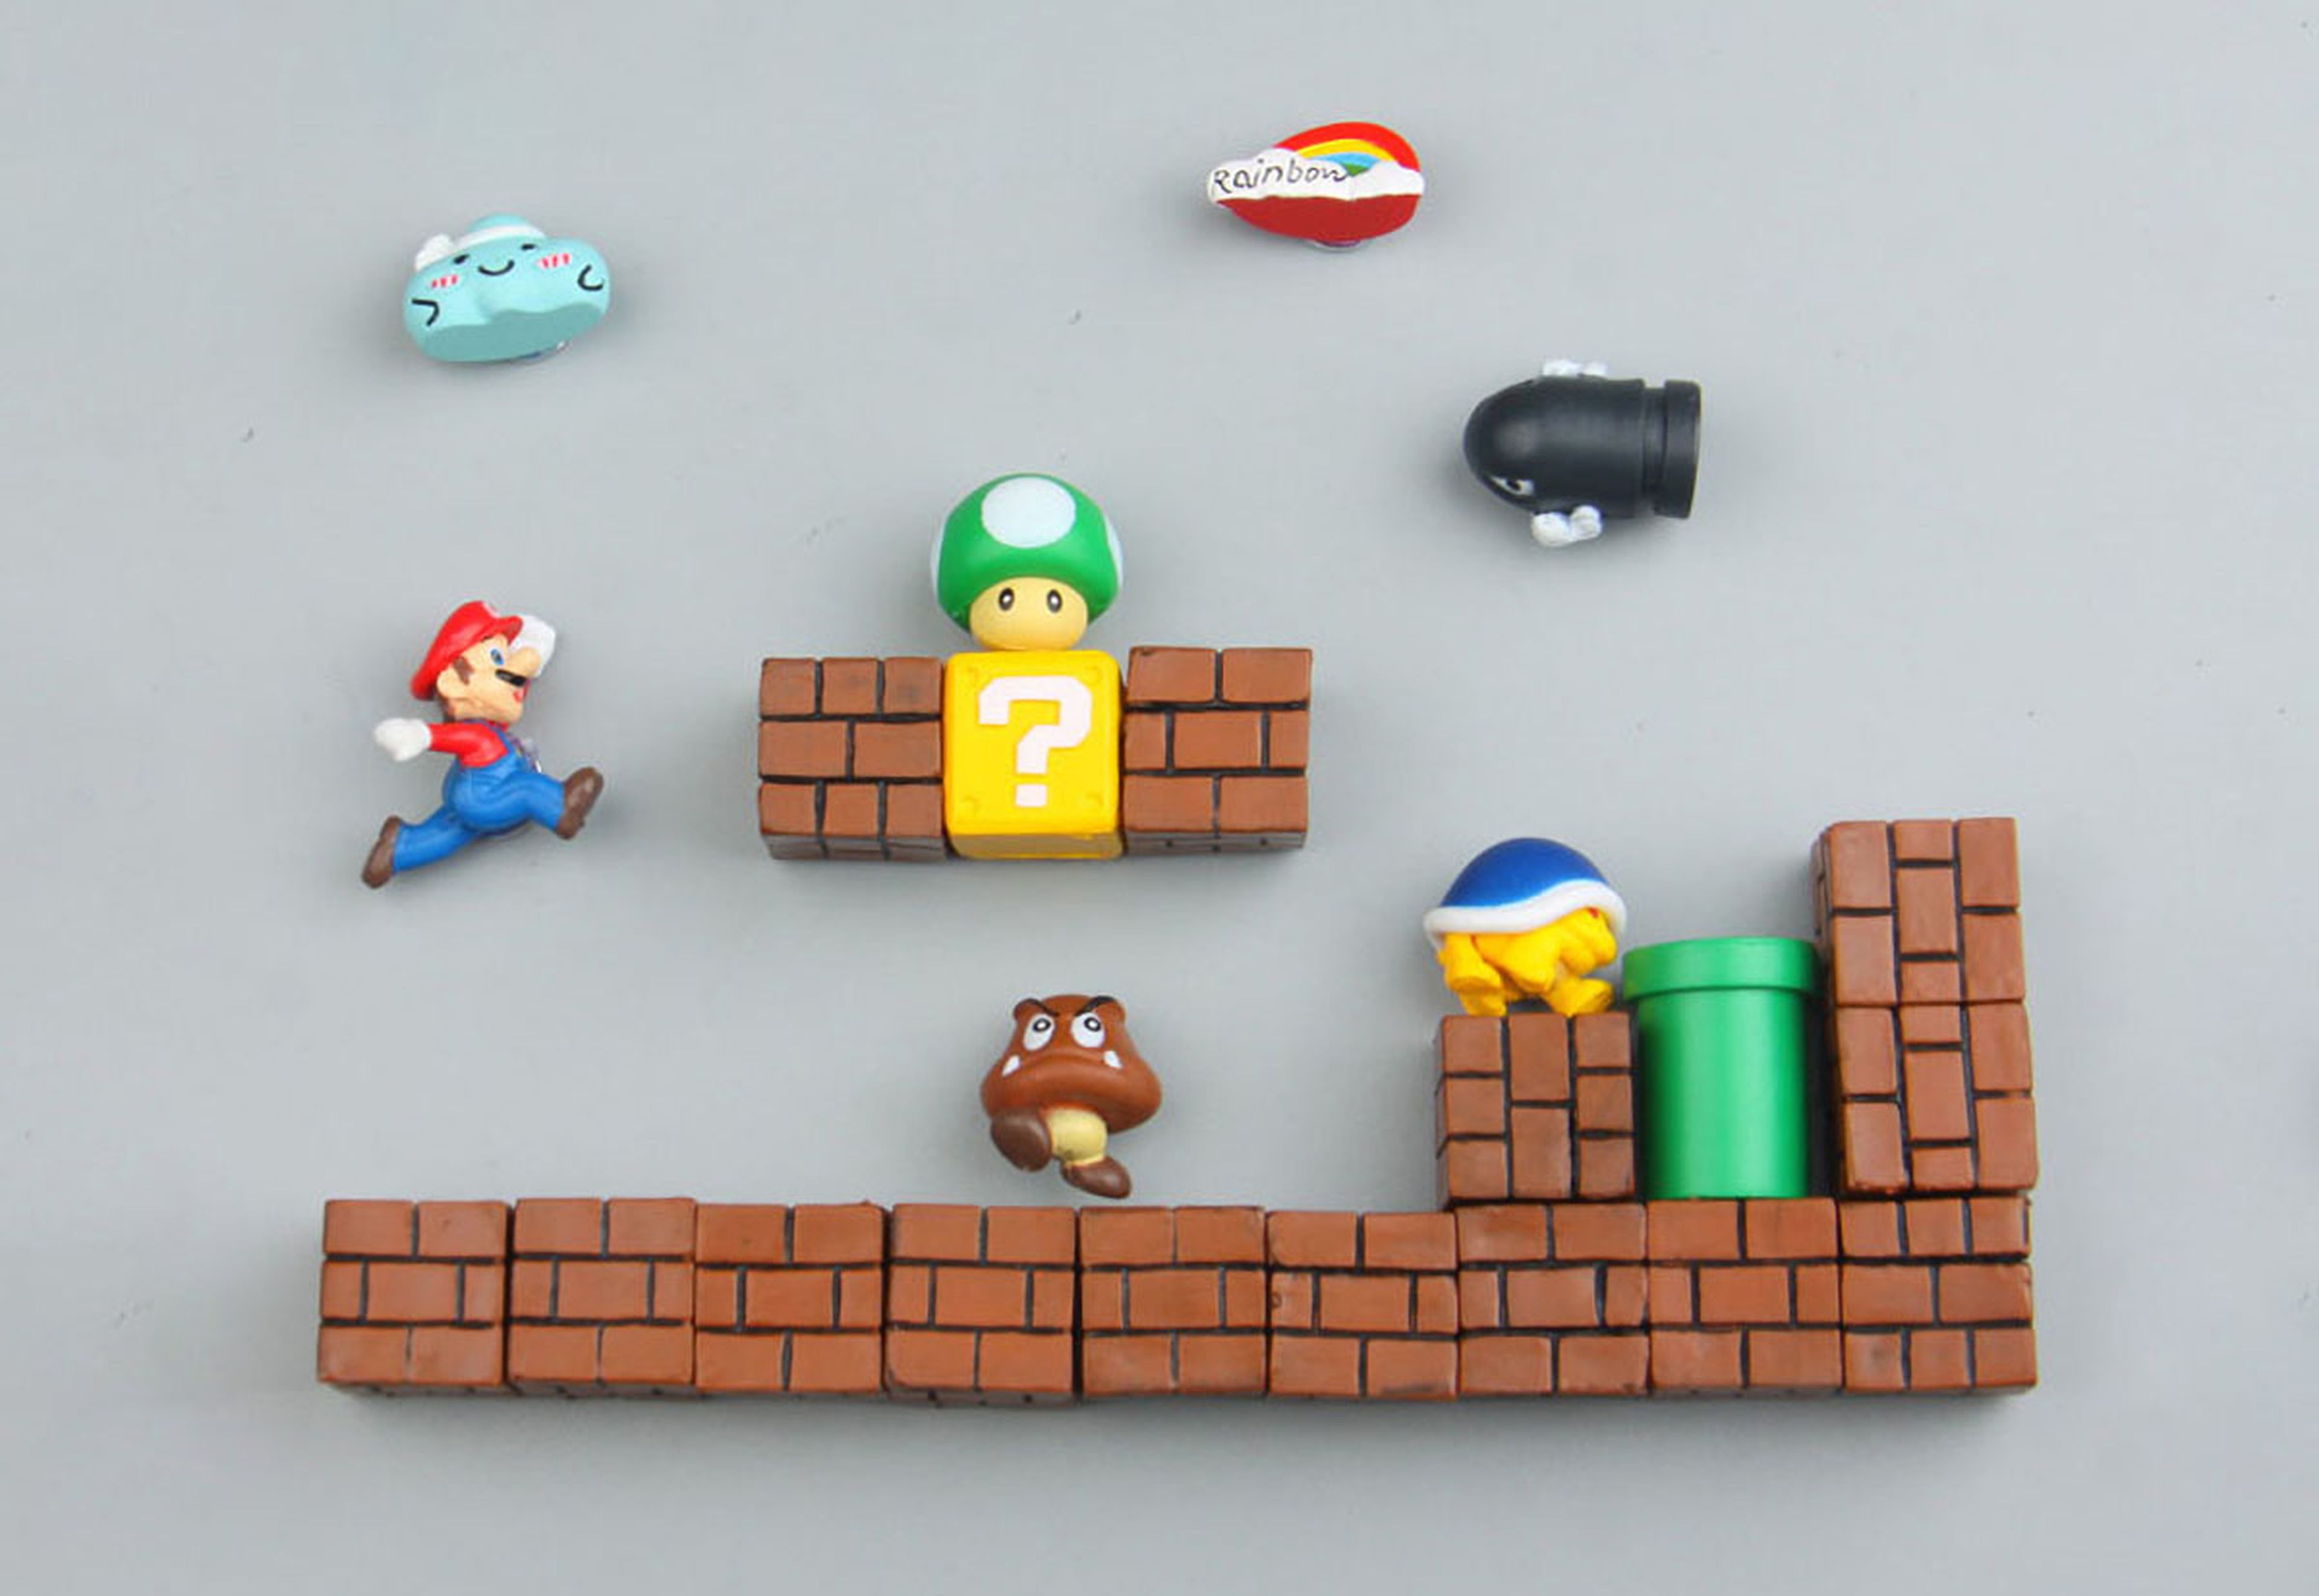 Imanes de Super Mario Bros.